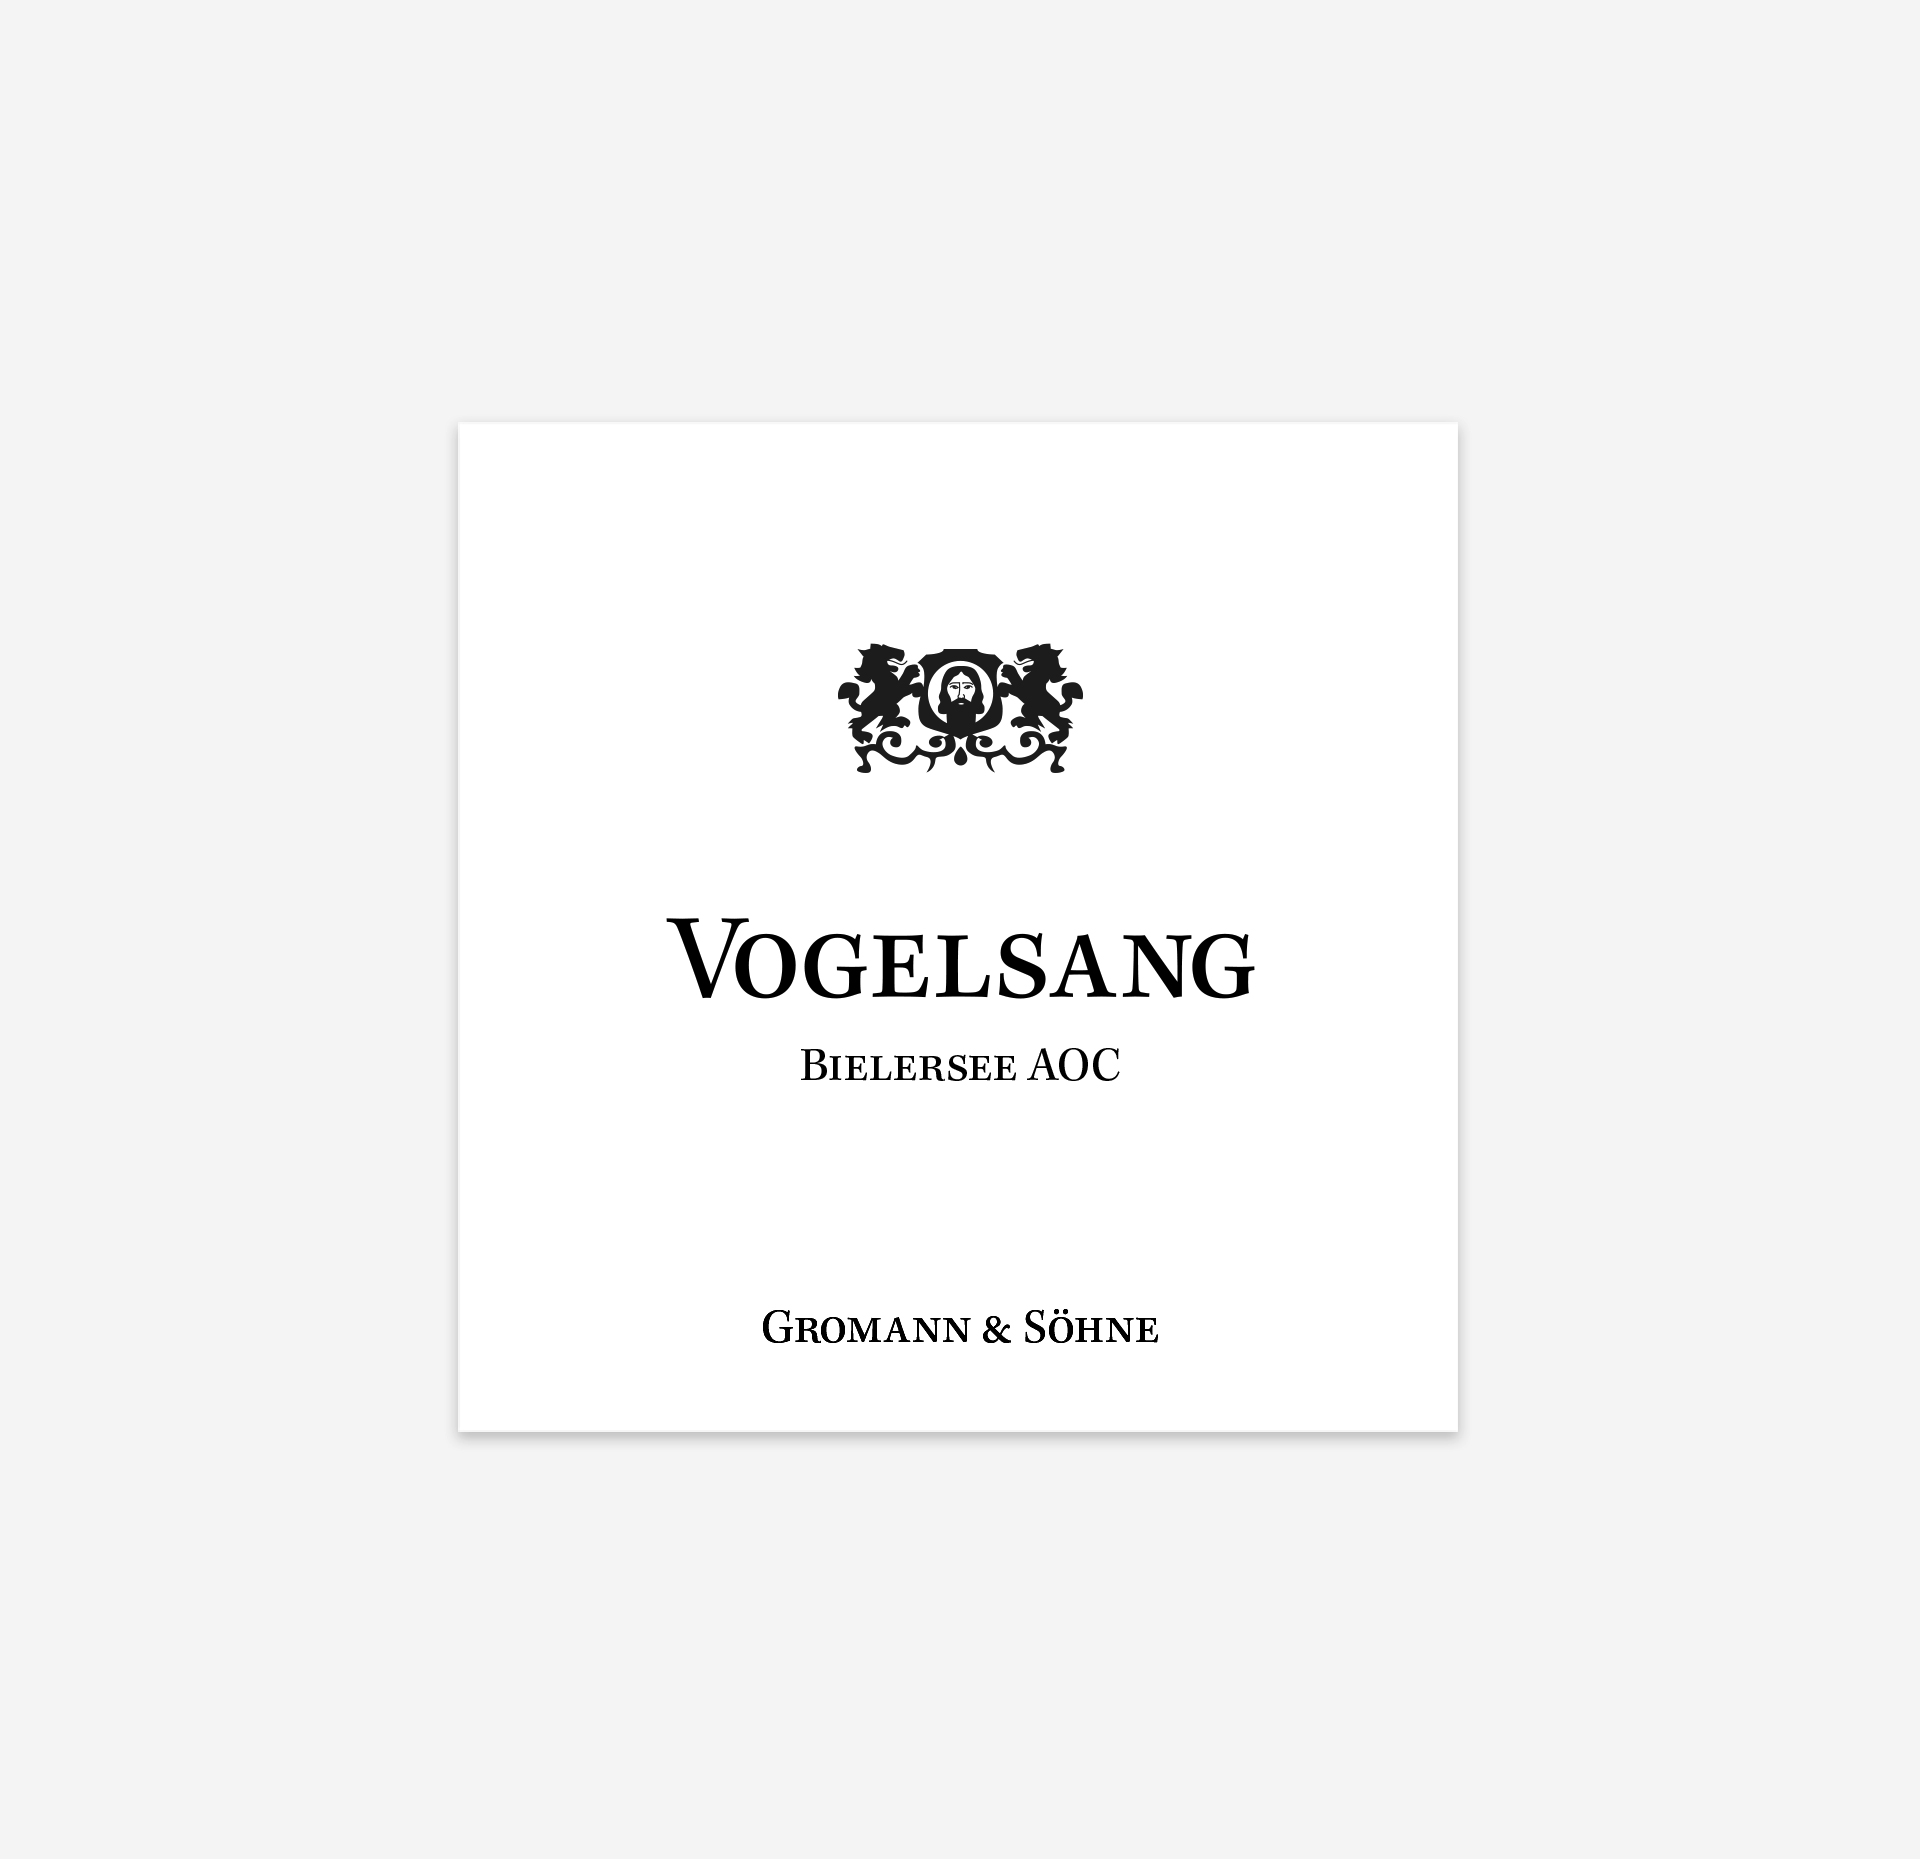 Etikettendesign - Stefanie Glauser - Etikette "Vogelsang" Gromann & Söhne